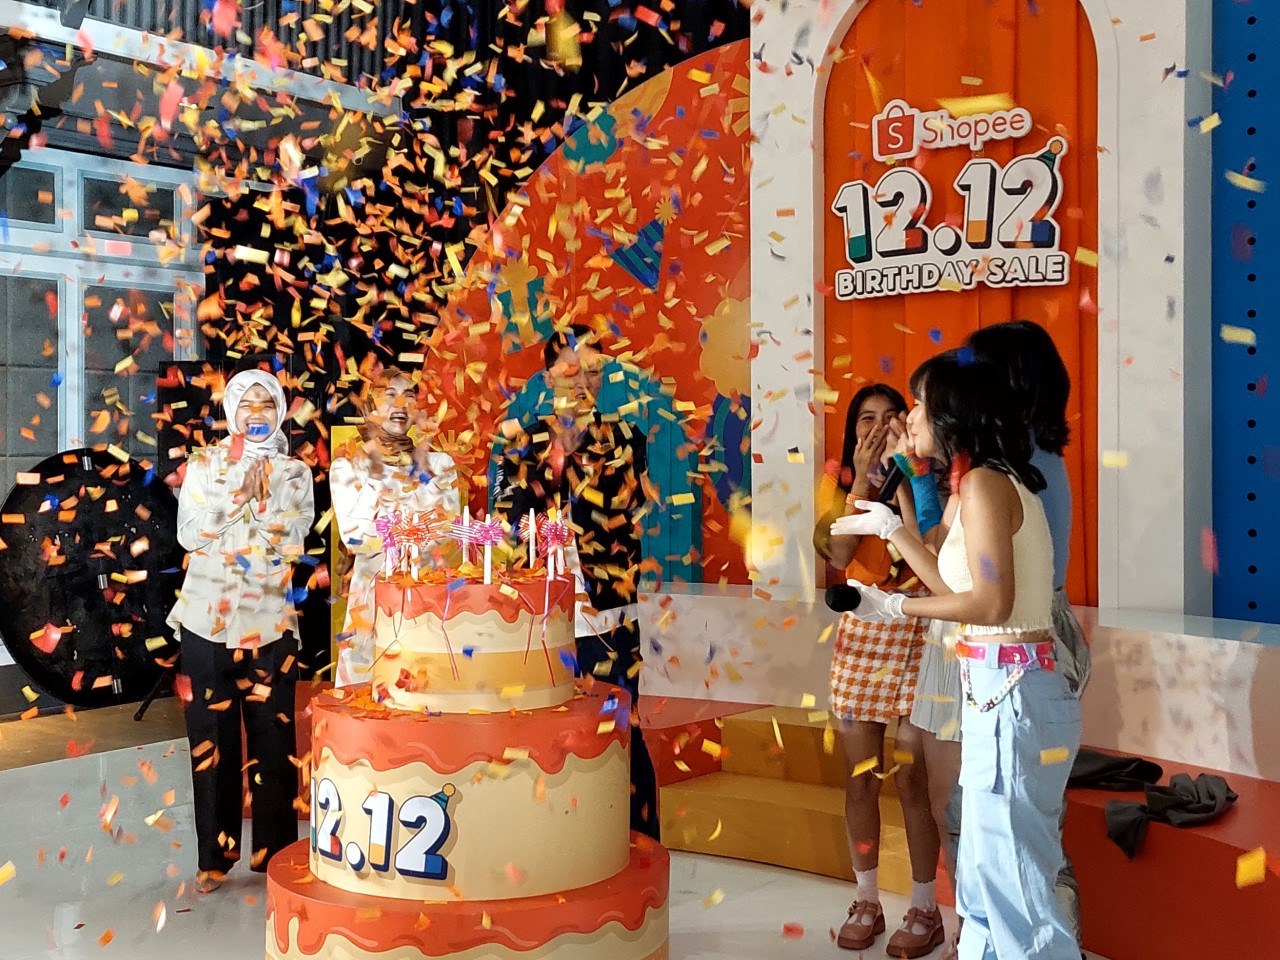 Rayakan Ulang Tahun, Shopee Gelar Kampanye 12.12 Birthday Sale dengan Ragam Promo Menarik